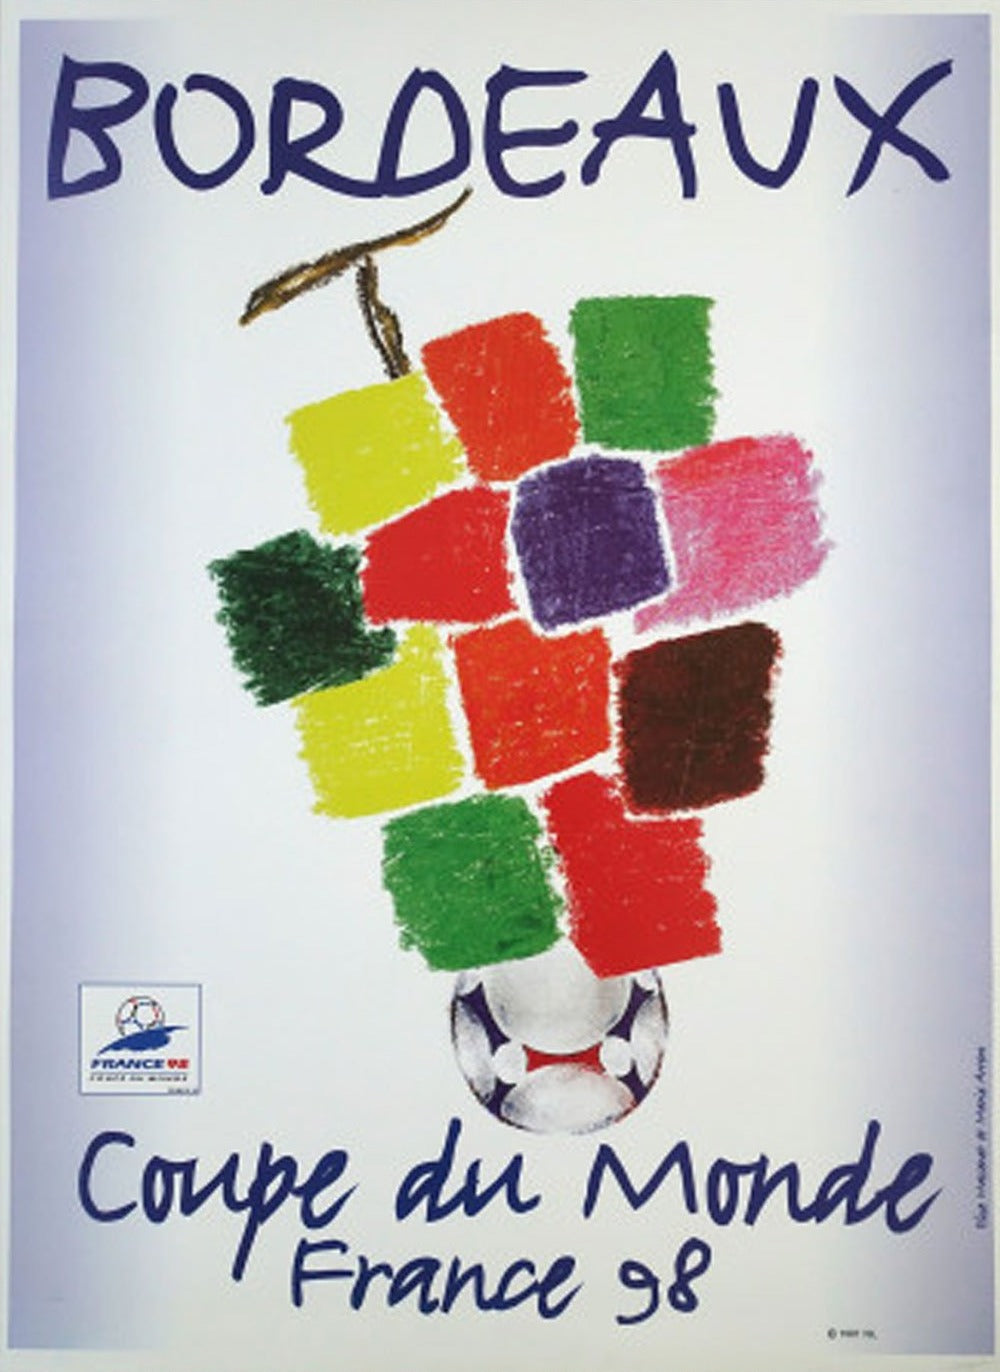 World Cup France '98 Bordeaux